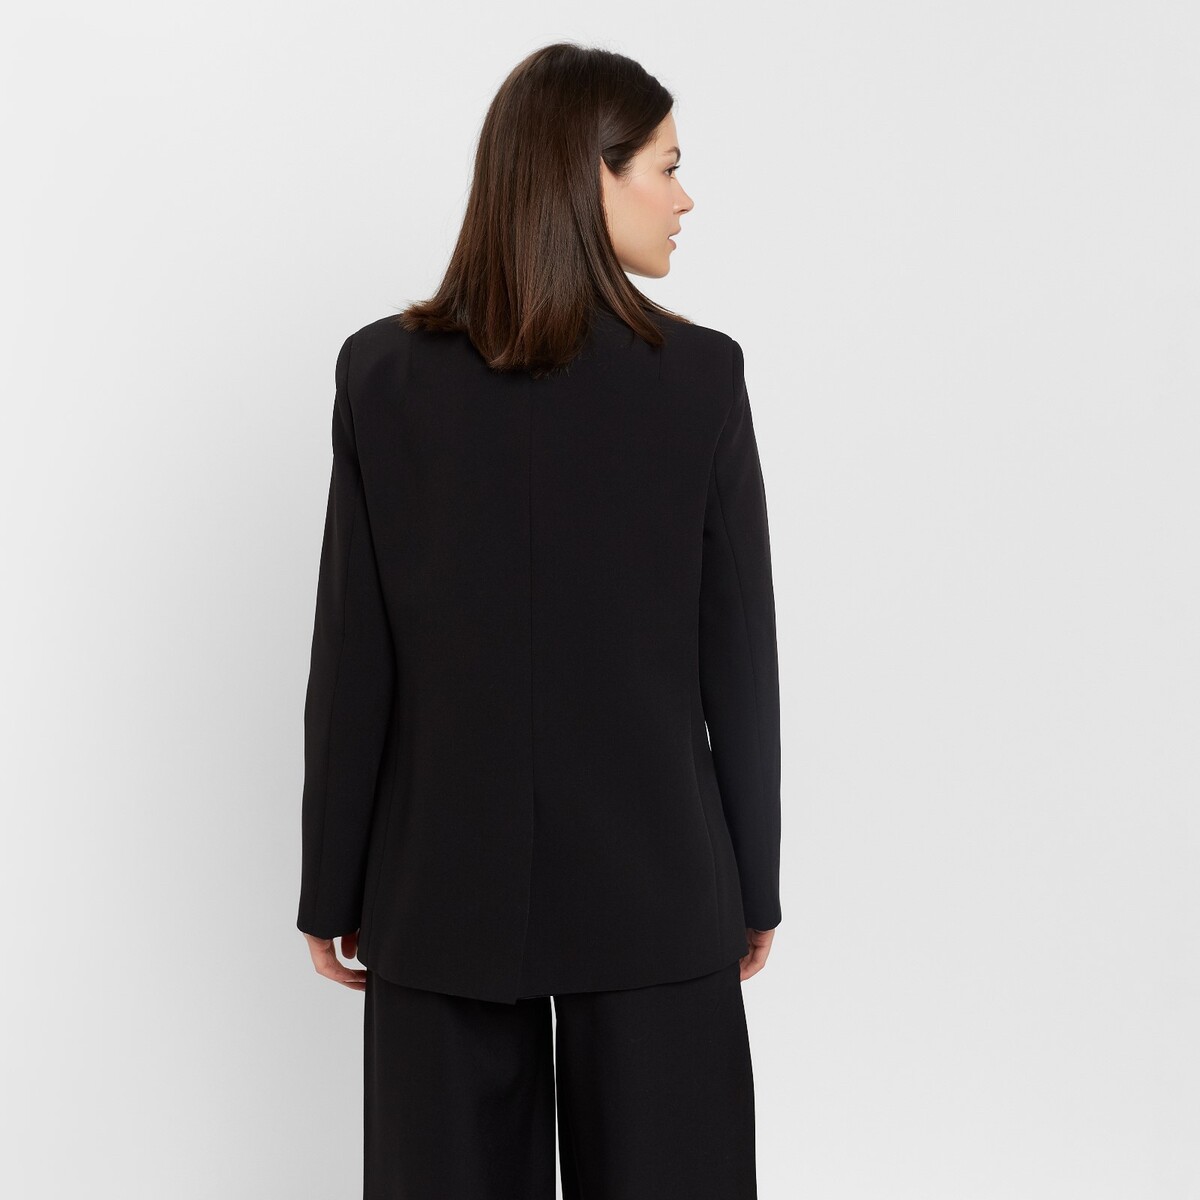 Пиджак MINAKU, размер 42, цвет черный 02054858 - фото 3